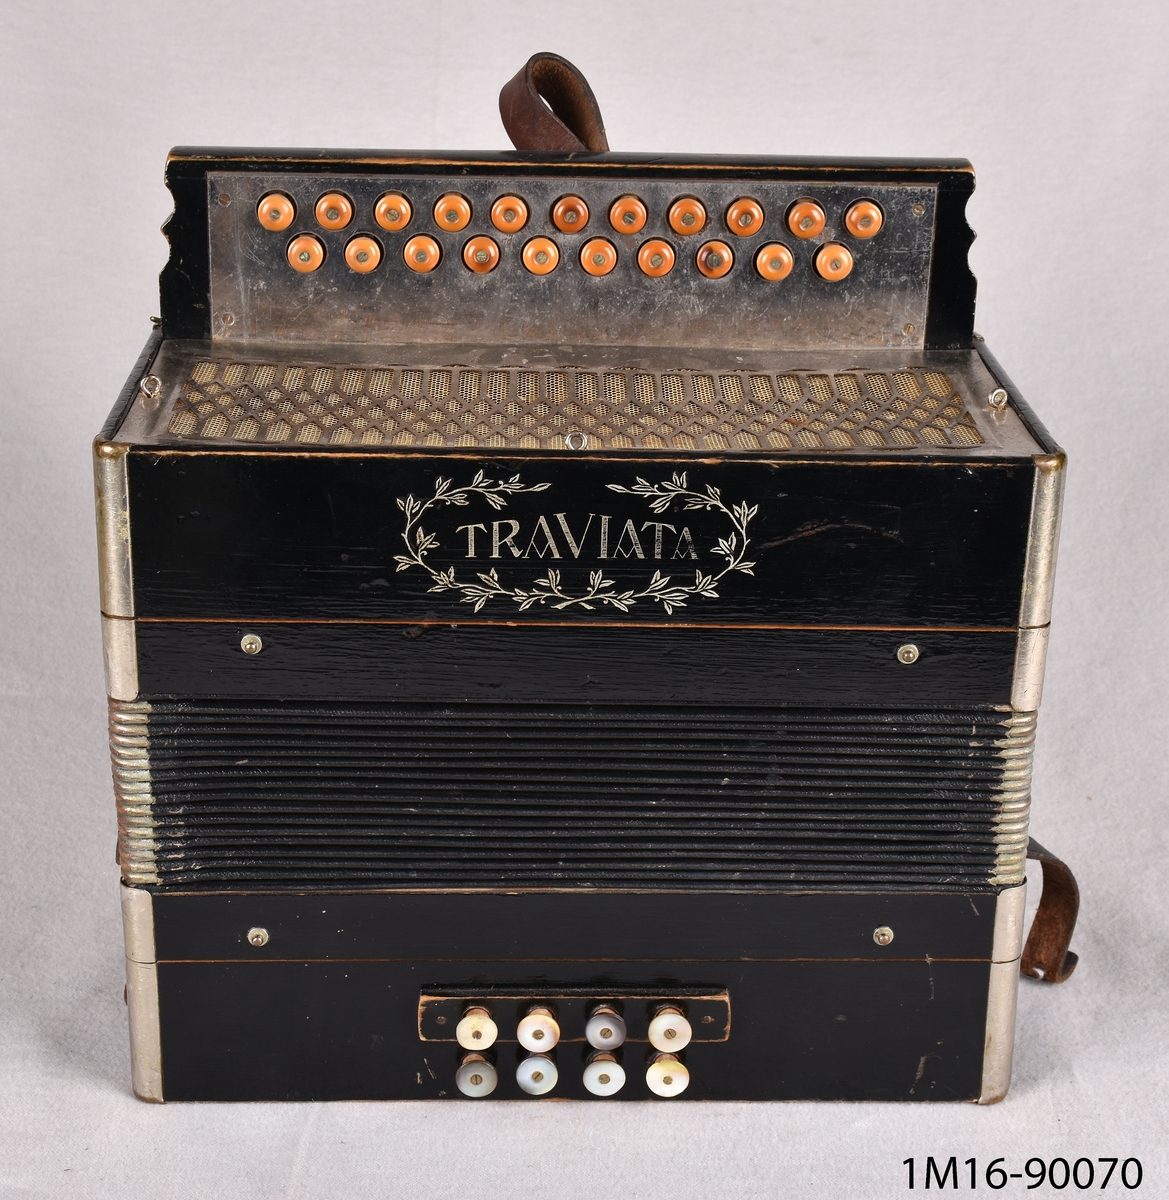 Dragspel, litet två radigt knappdragspel, durspel med endast åtta basknappar, fyra i varje rad. Spelet som är märkt "Traviata" är enligt uppgift från tiden mellan 1905 och 1910, materialet är huvudsakligen trä med metallbeslag och bygel av läder.